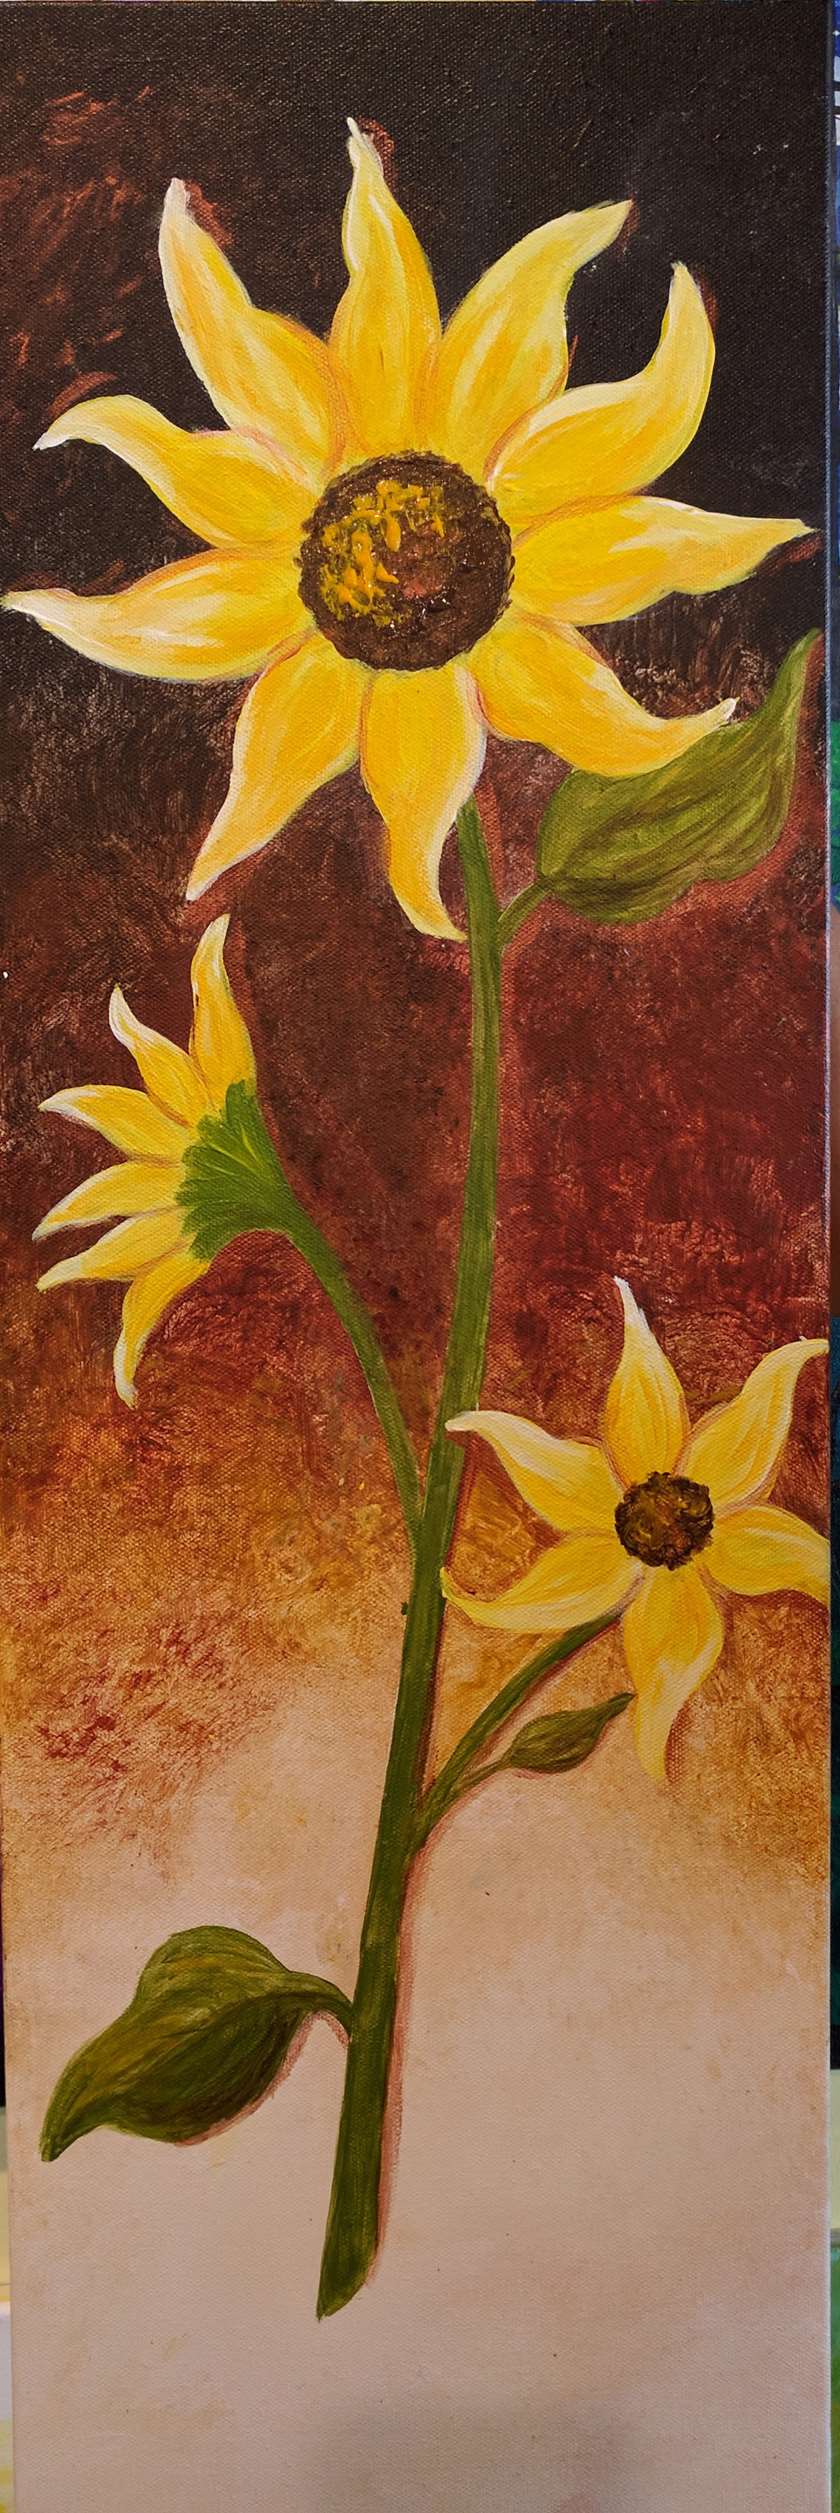 Autumn Sunflower 